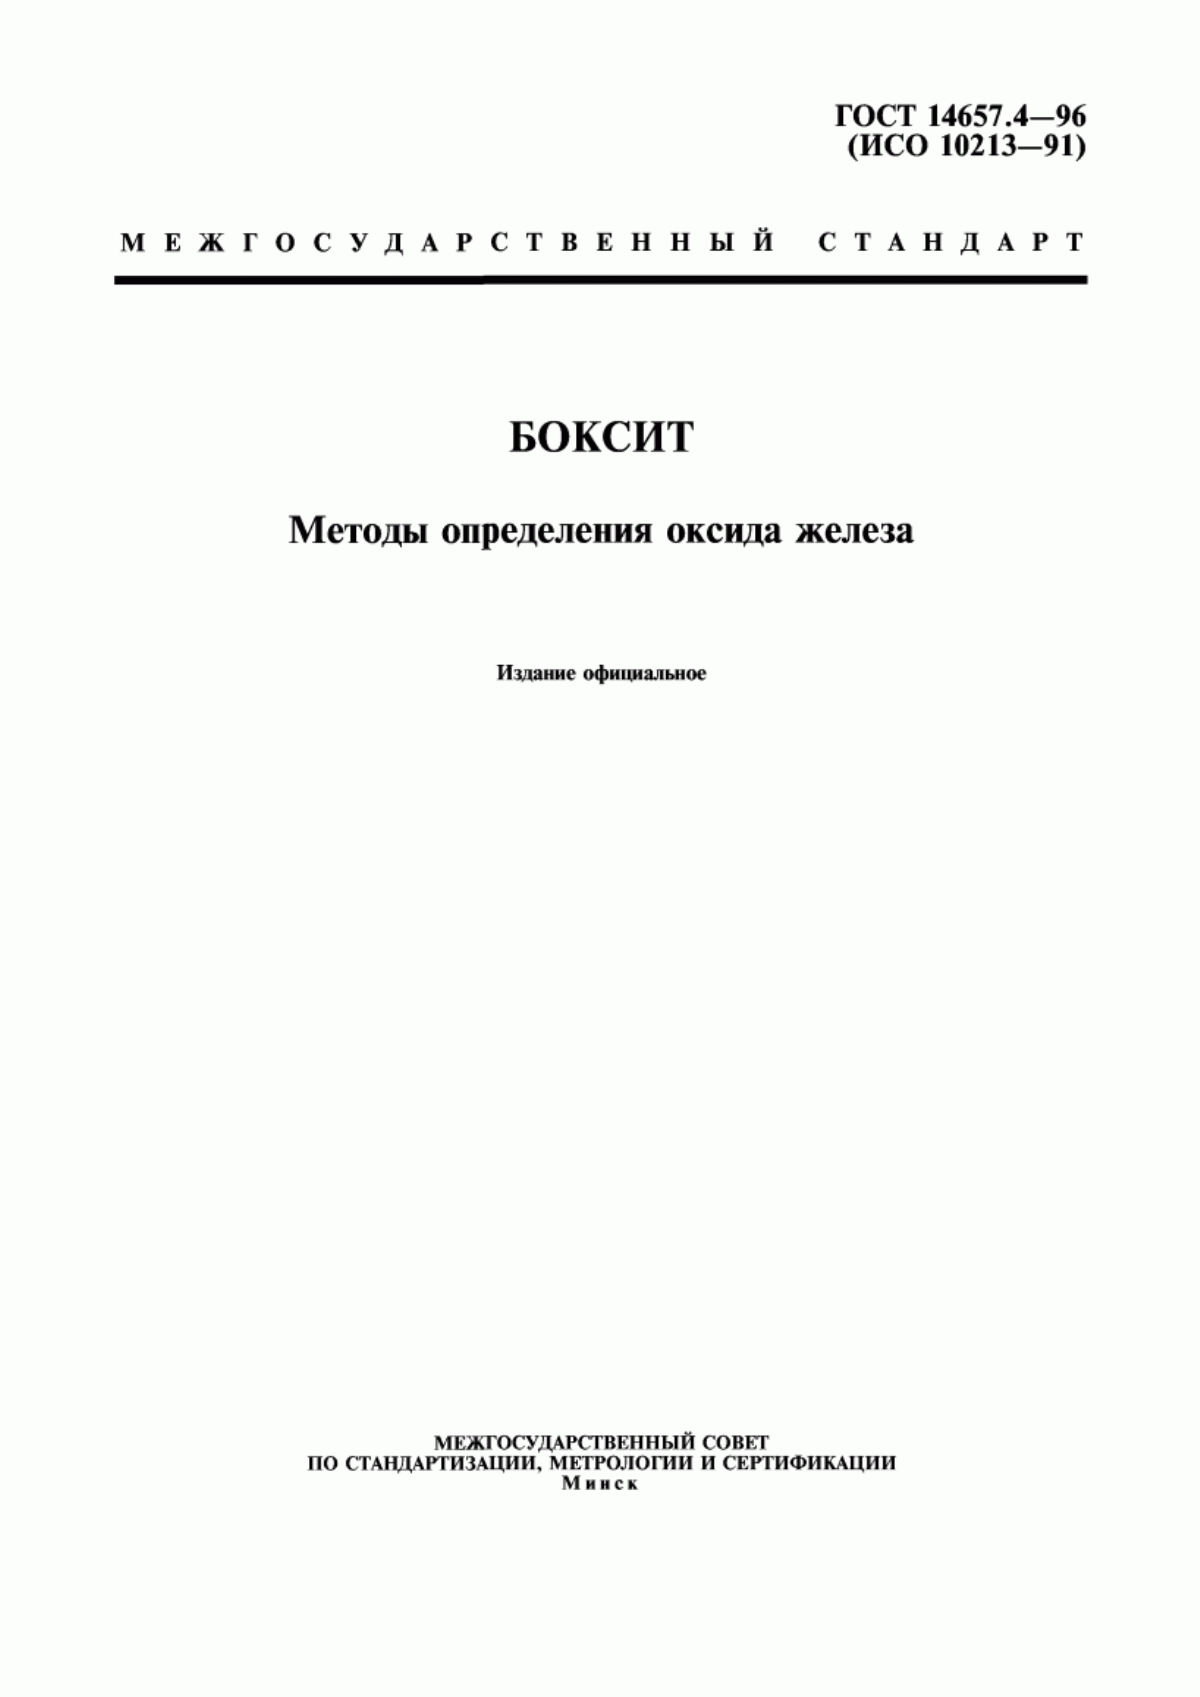 ГОСТ 14657.4-96 Боксит. Методы определения оксида железа